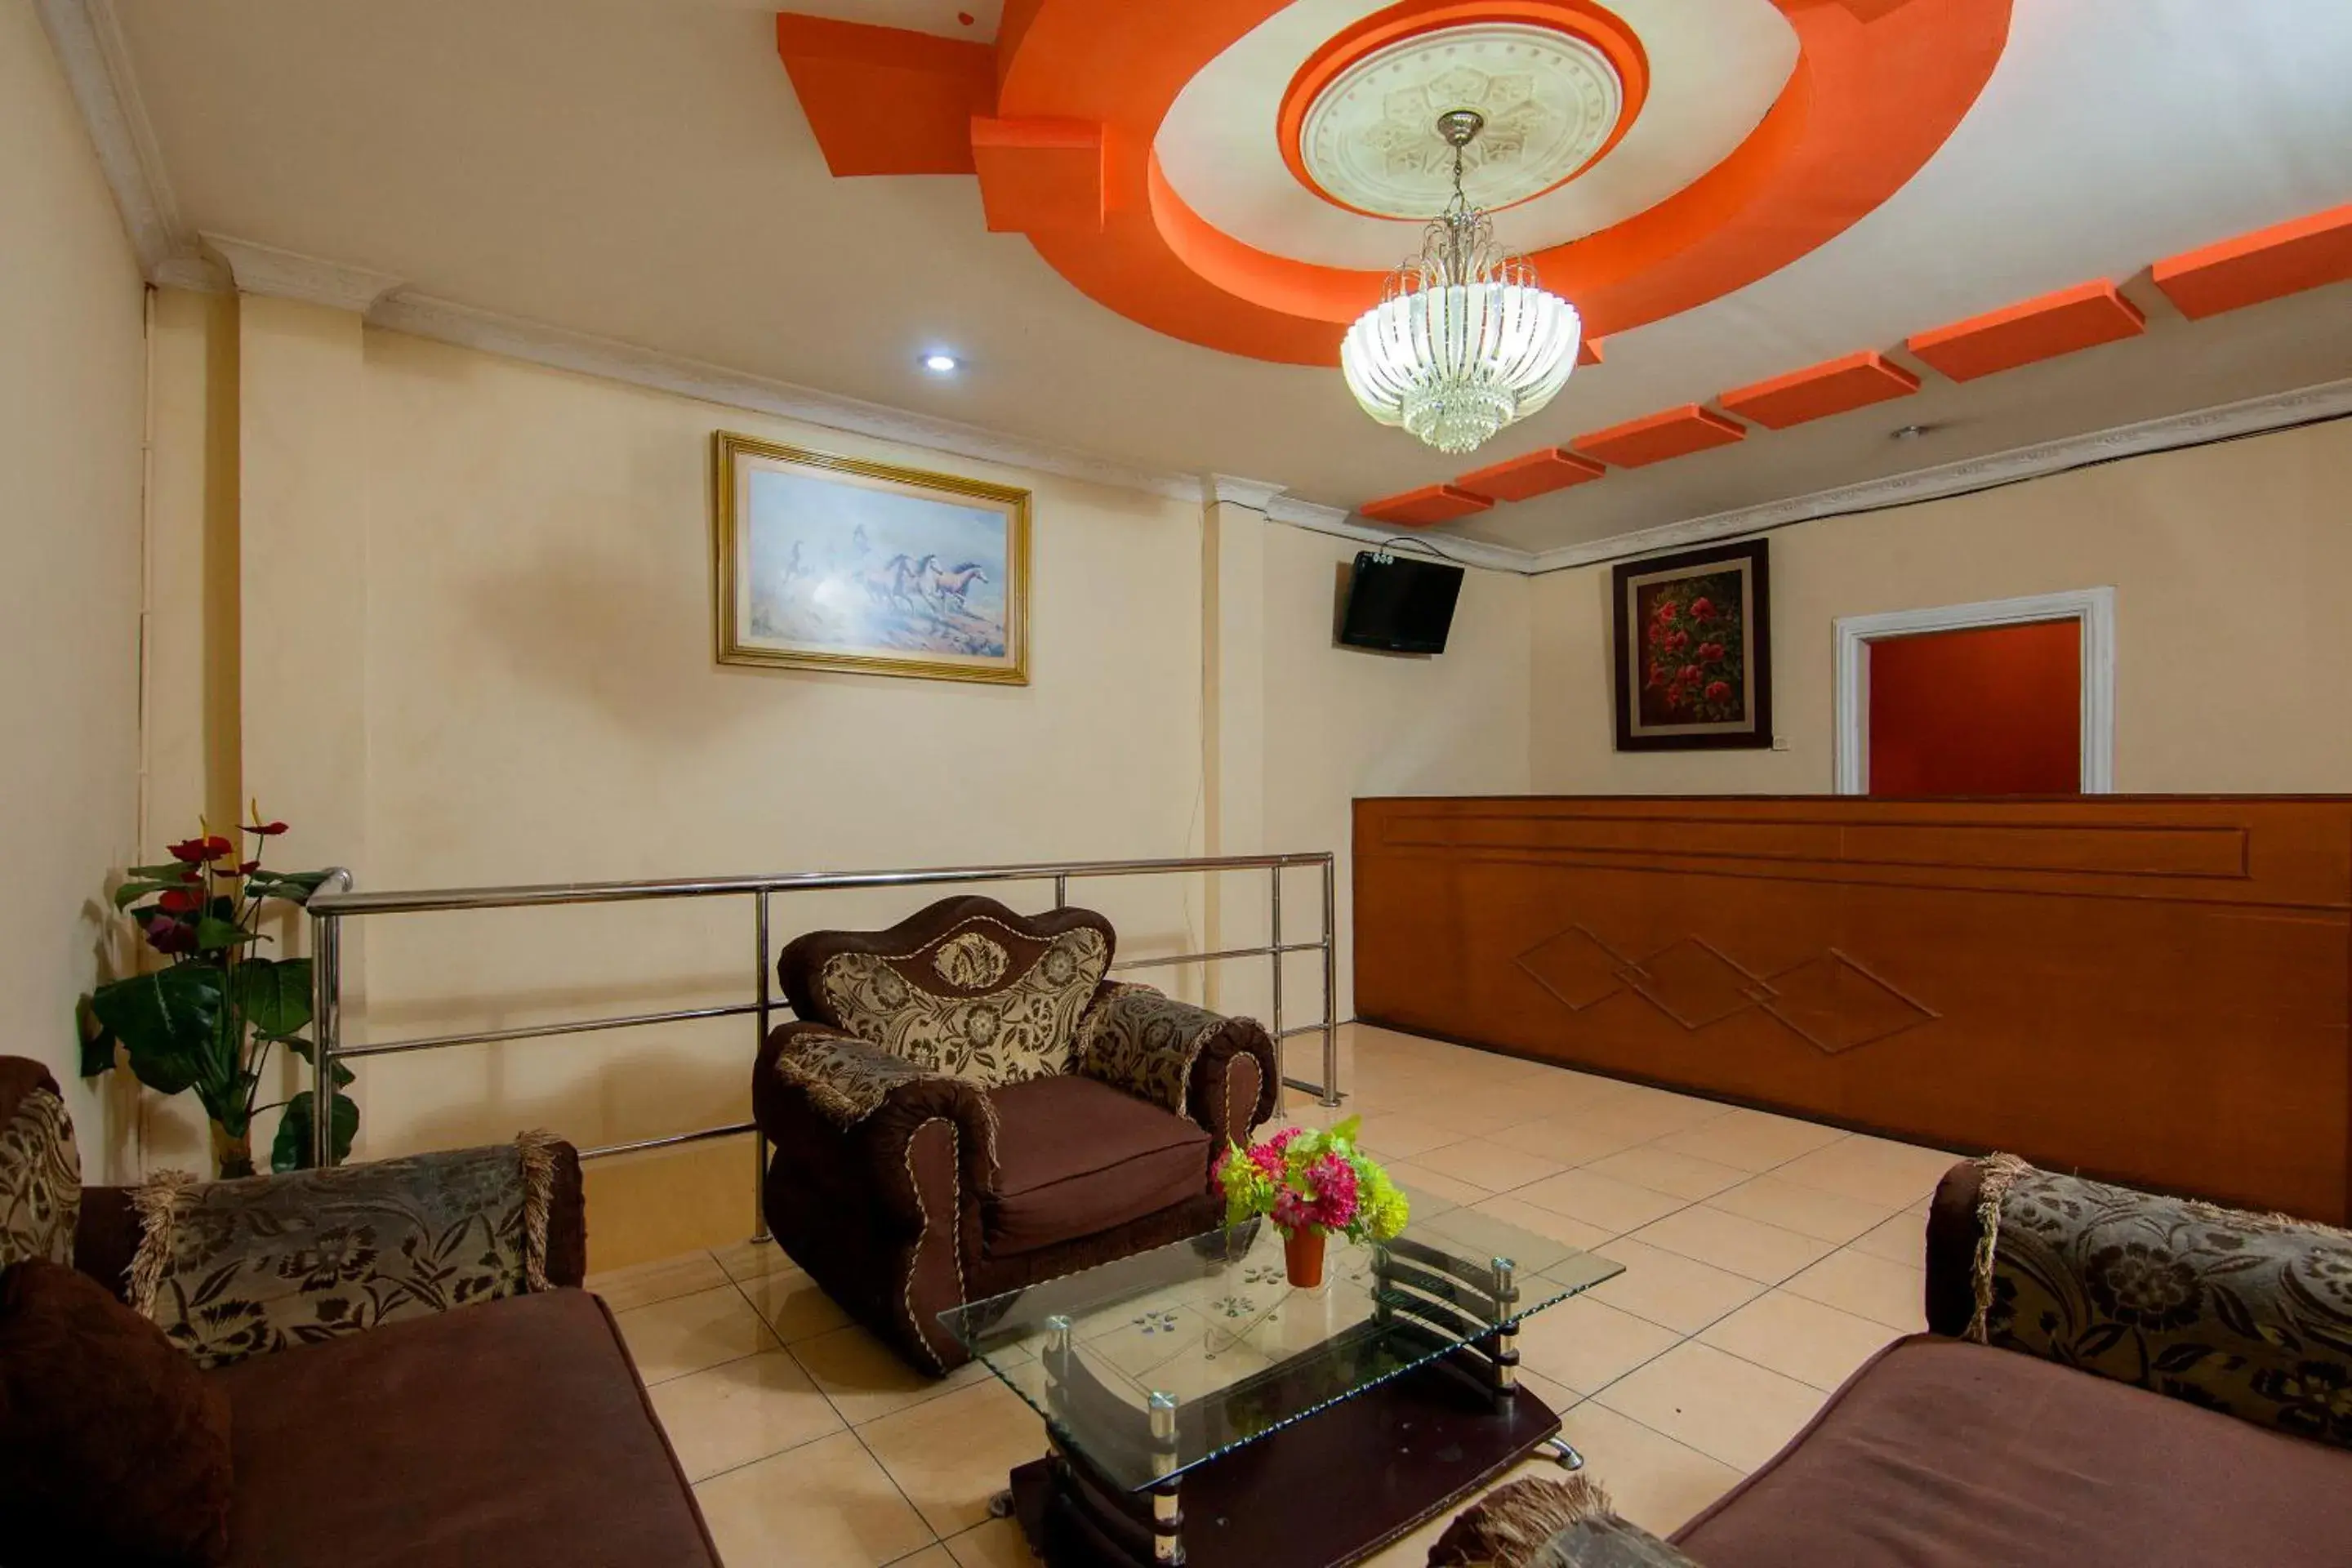 Lobby or reception, Lobby/Reception in OYO 2045 Hotel 211